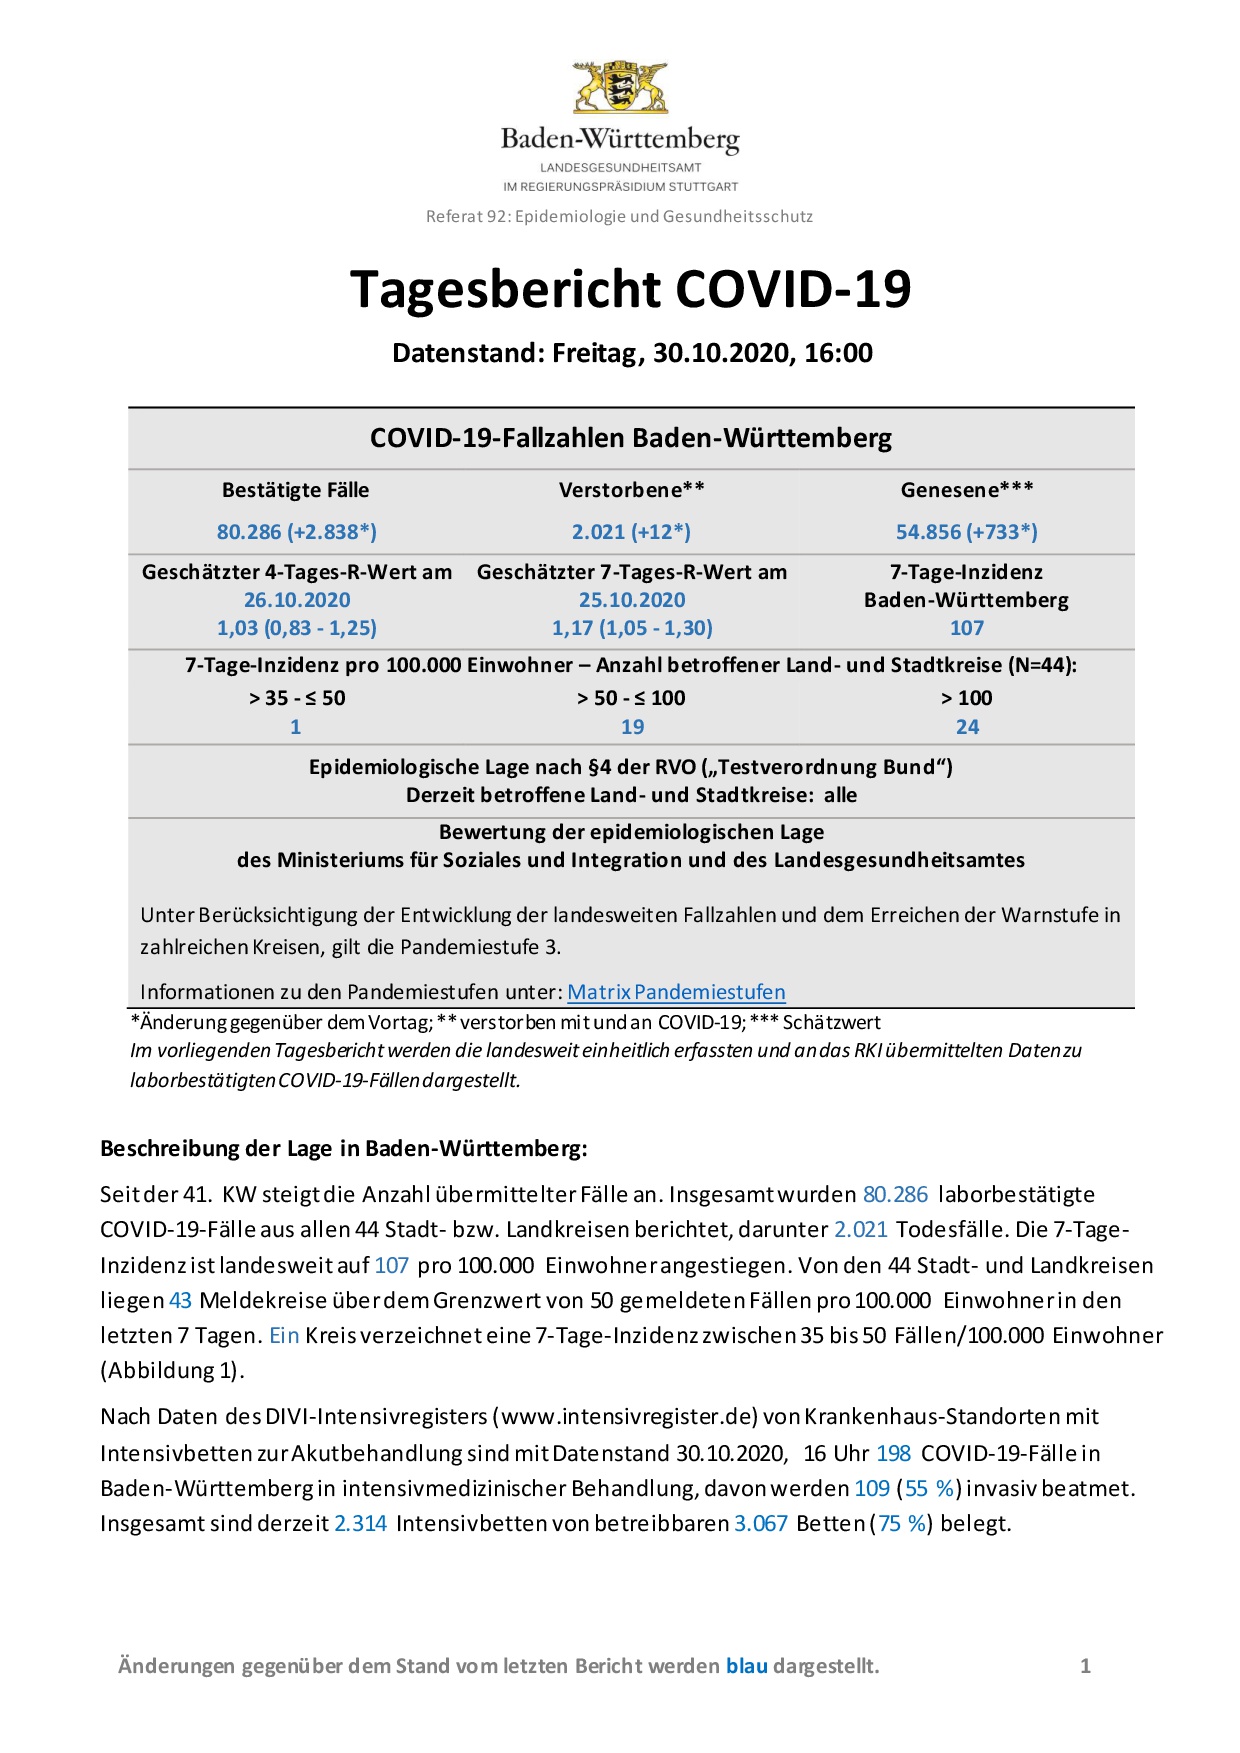 COVID-19 Tagesbericht (30.10.2020) des Landesgesundheitsamts Baden-Württemberg – (ausführlicher)